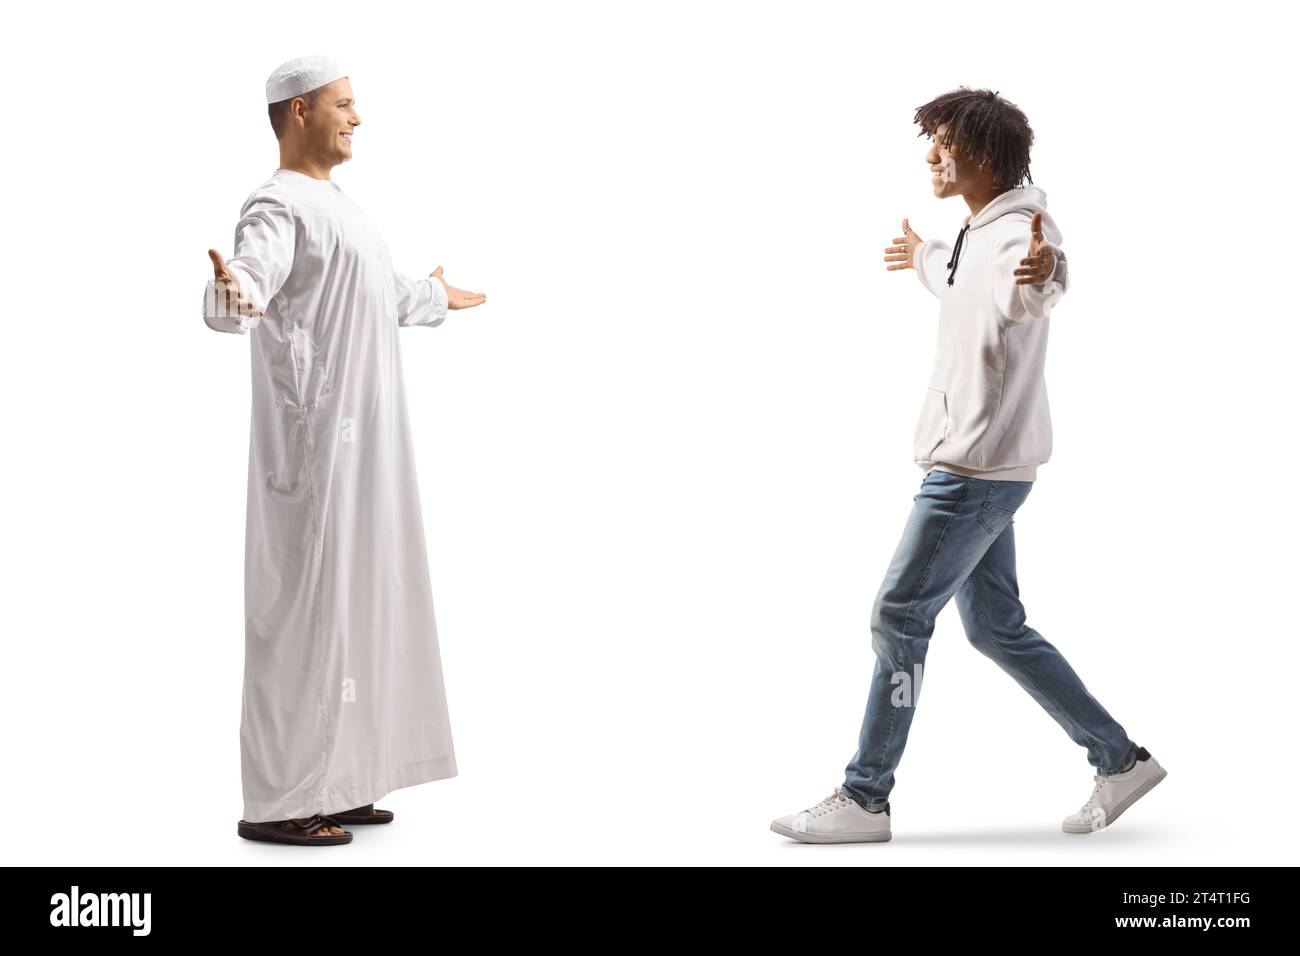 Ein muslimischer Mann trifft auf einen afroamerikaner, isoliert auf weißem Hintergrund Stockfoto